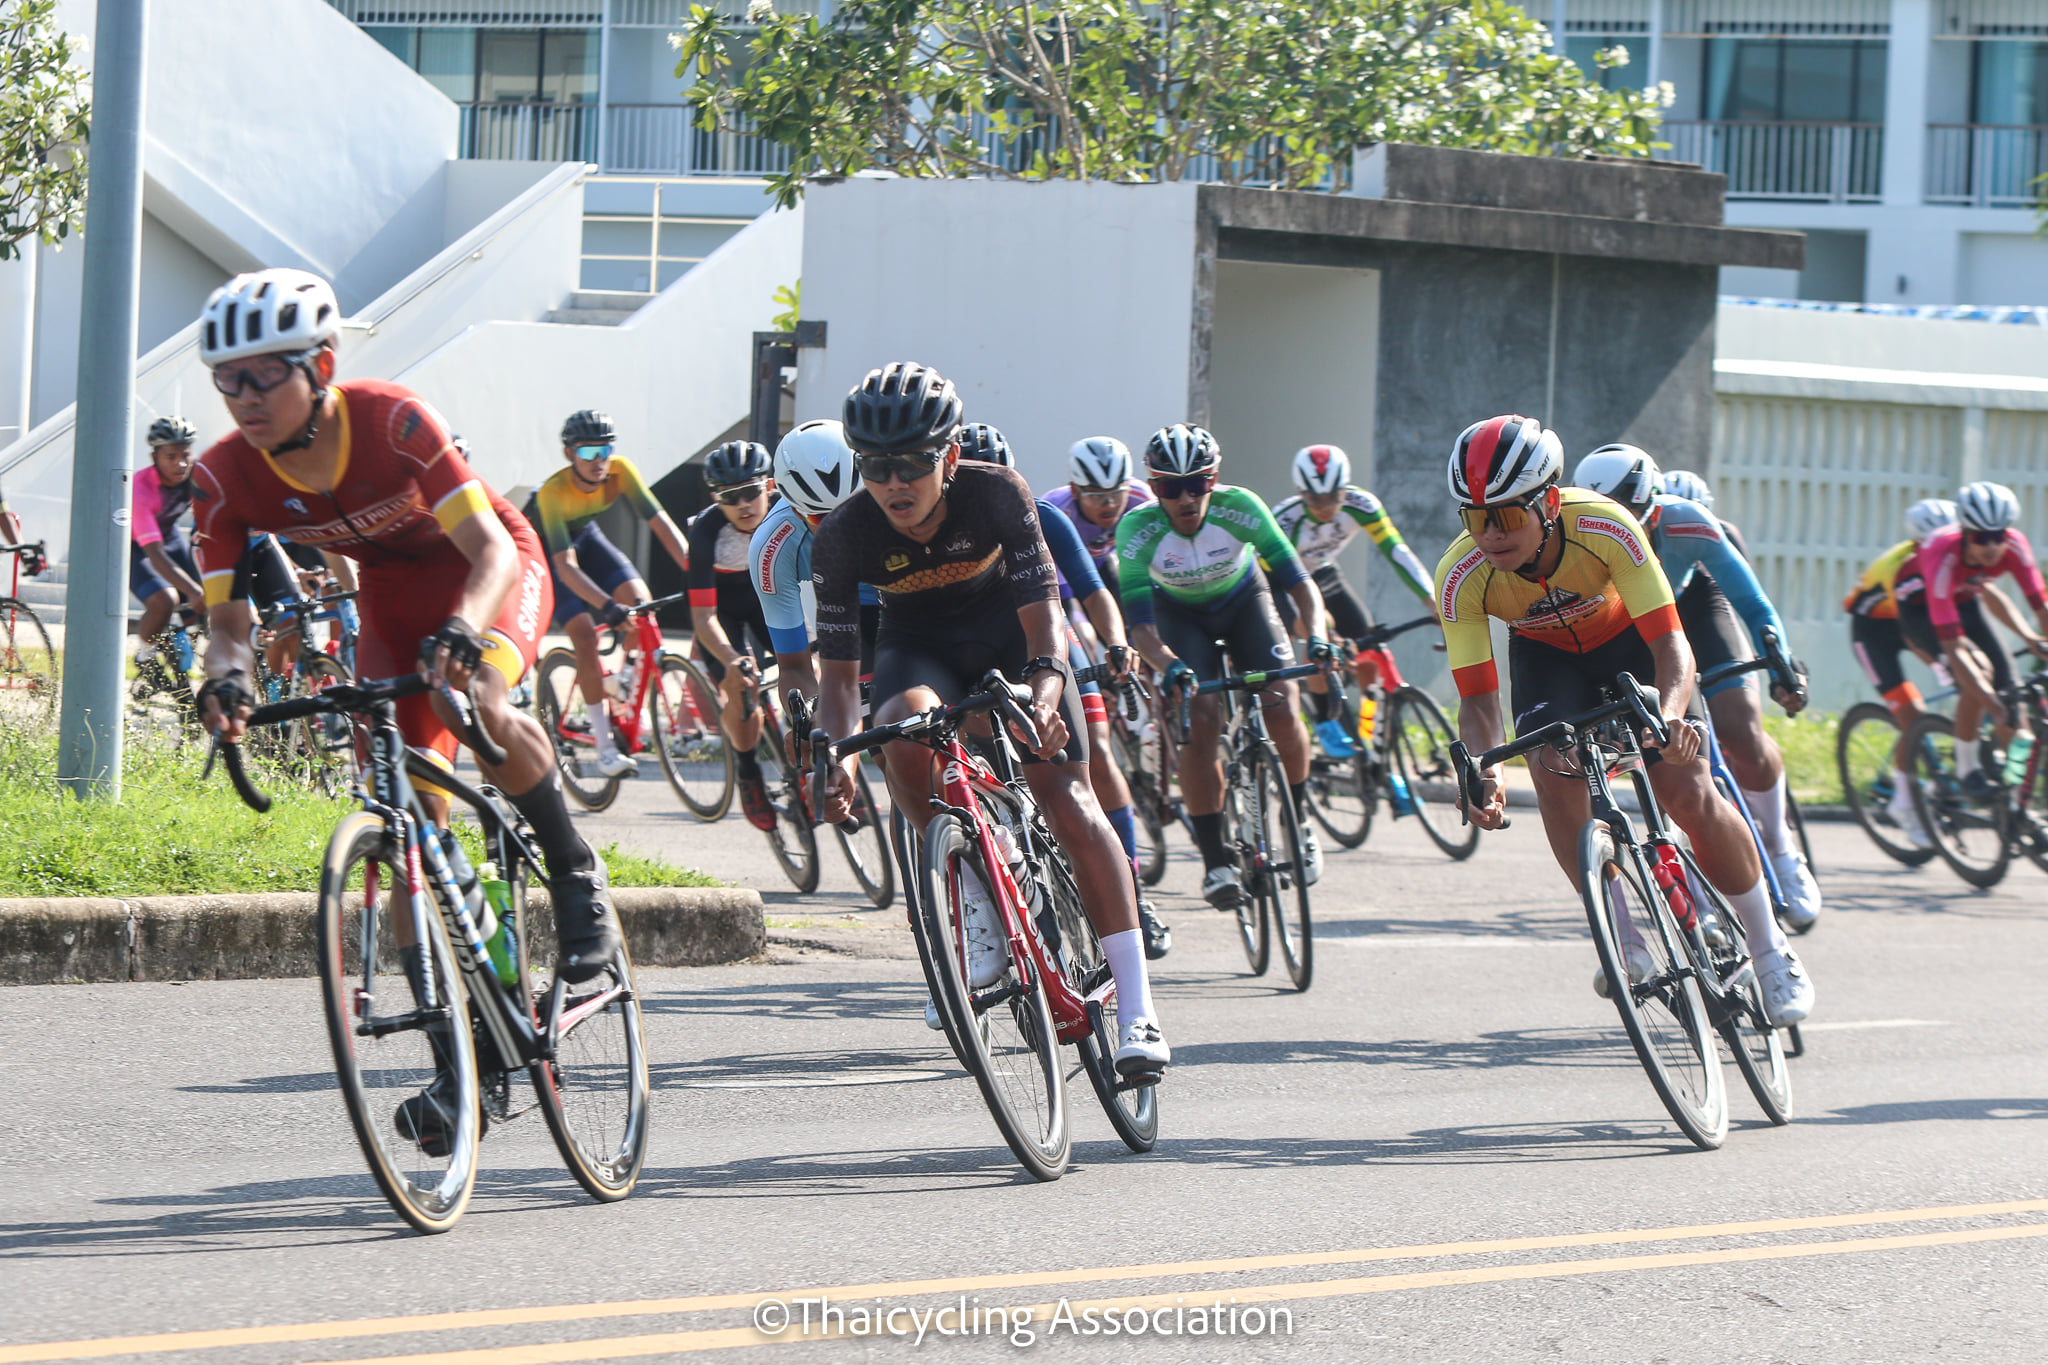 การแข่งขันจักรยานประเภทถนน ชิงแชมป์ประเทศไทย ชิงถ้วยพระราชทานฯ และการแข่งขันจักรยานเมาเท่นไบค์ ชิงแชมป์ประเทศไทย ชิงถ้วยพระราชทาน ฯ สนามที่ 5